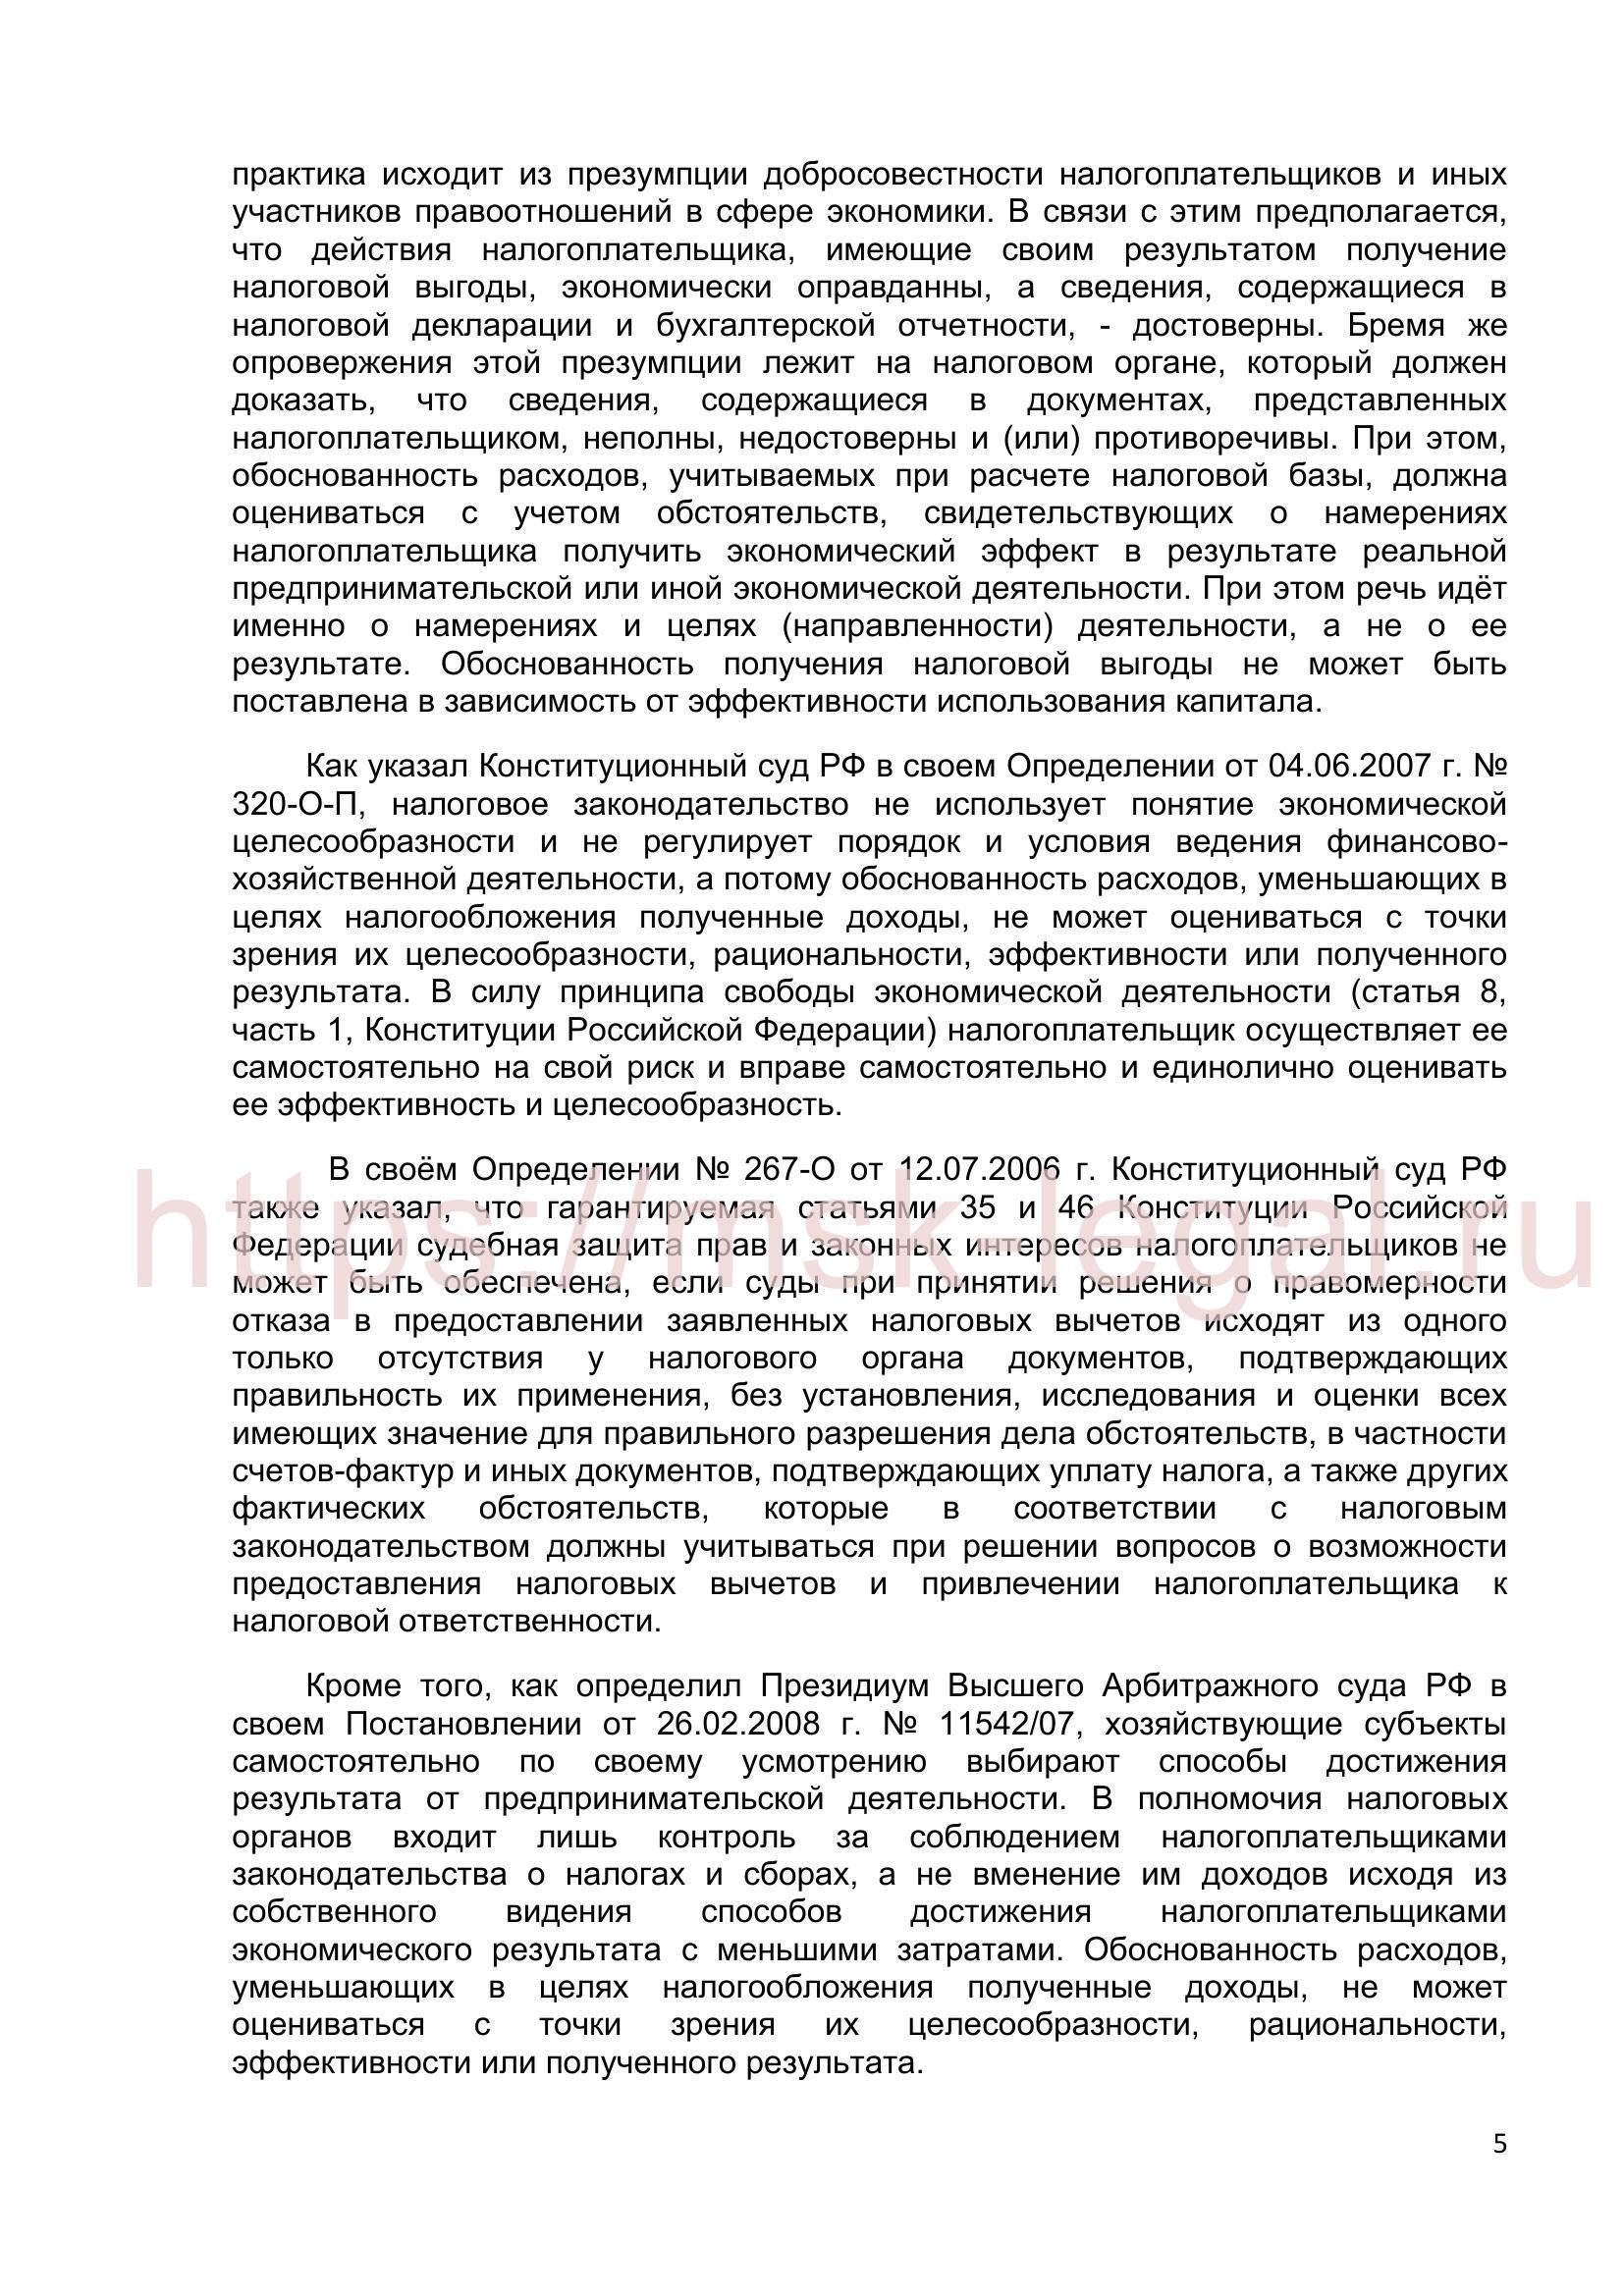 Ходатайство о прекращении уголовного дела по ст. 199 УК РФ на основании п. 2 ч. 1ст. 24 УПК РФ